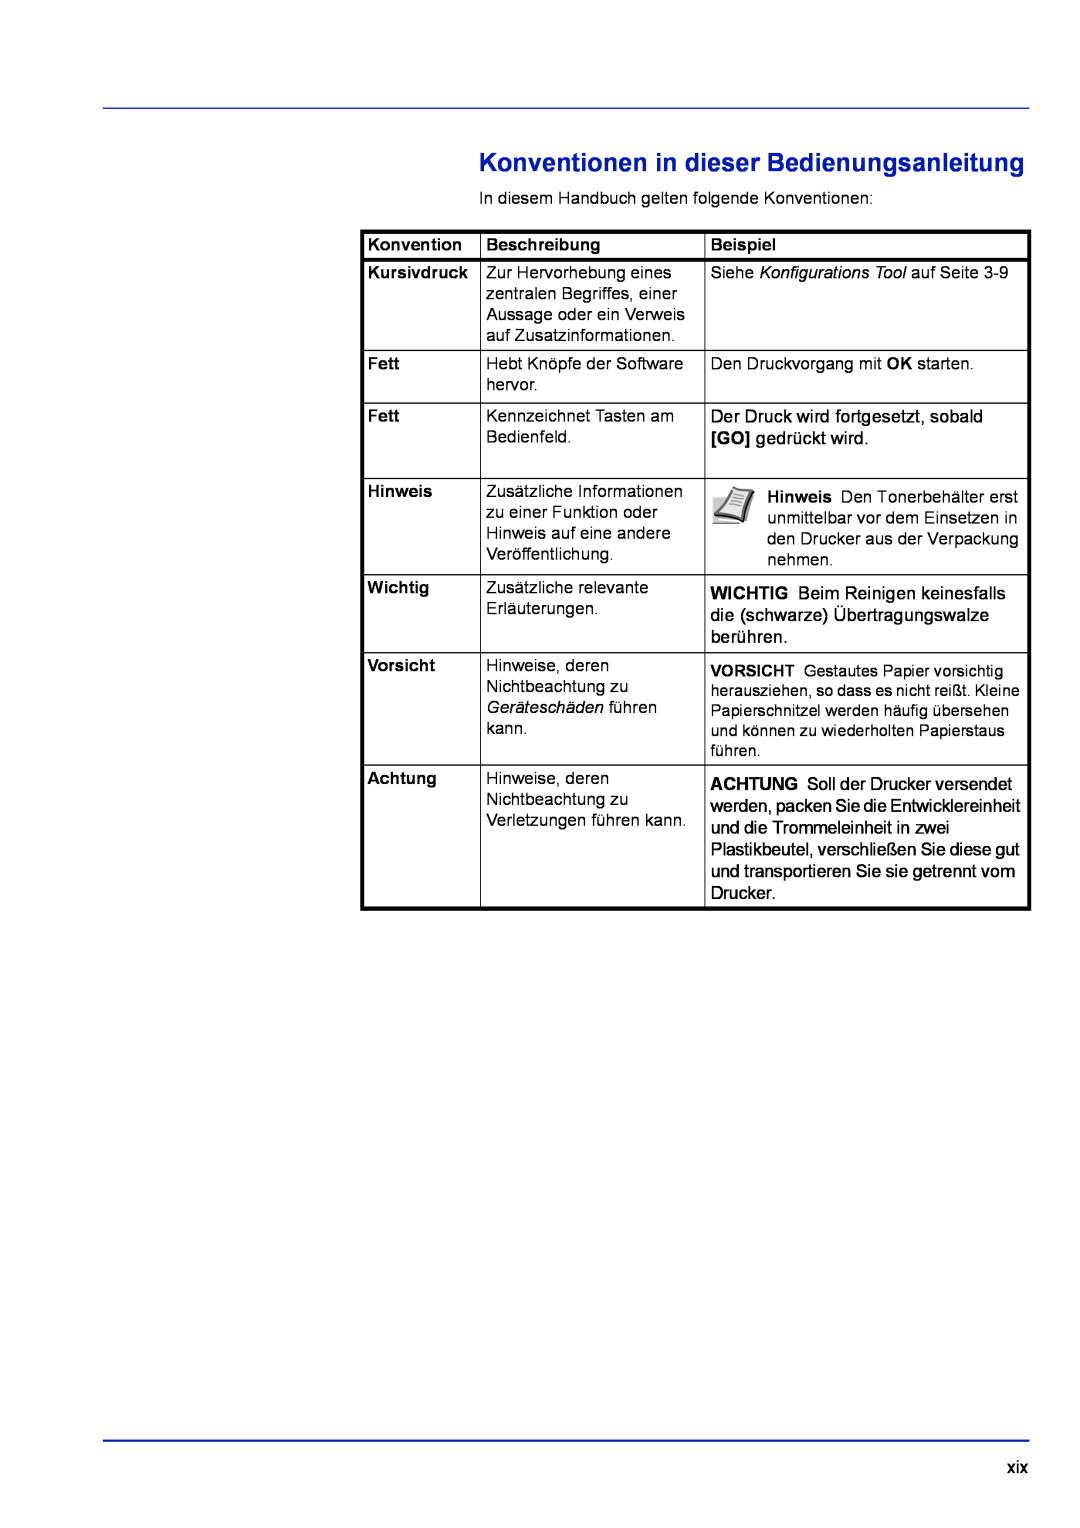 Kyocera FS-1320D Konventionen in dieser Bedienungsanleitung, Beschreibung, Beispiel, Kursivdruck, Fett, Hinweis, Wichtig 